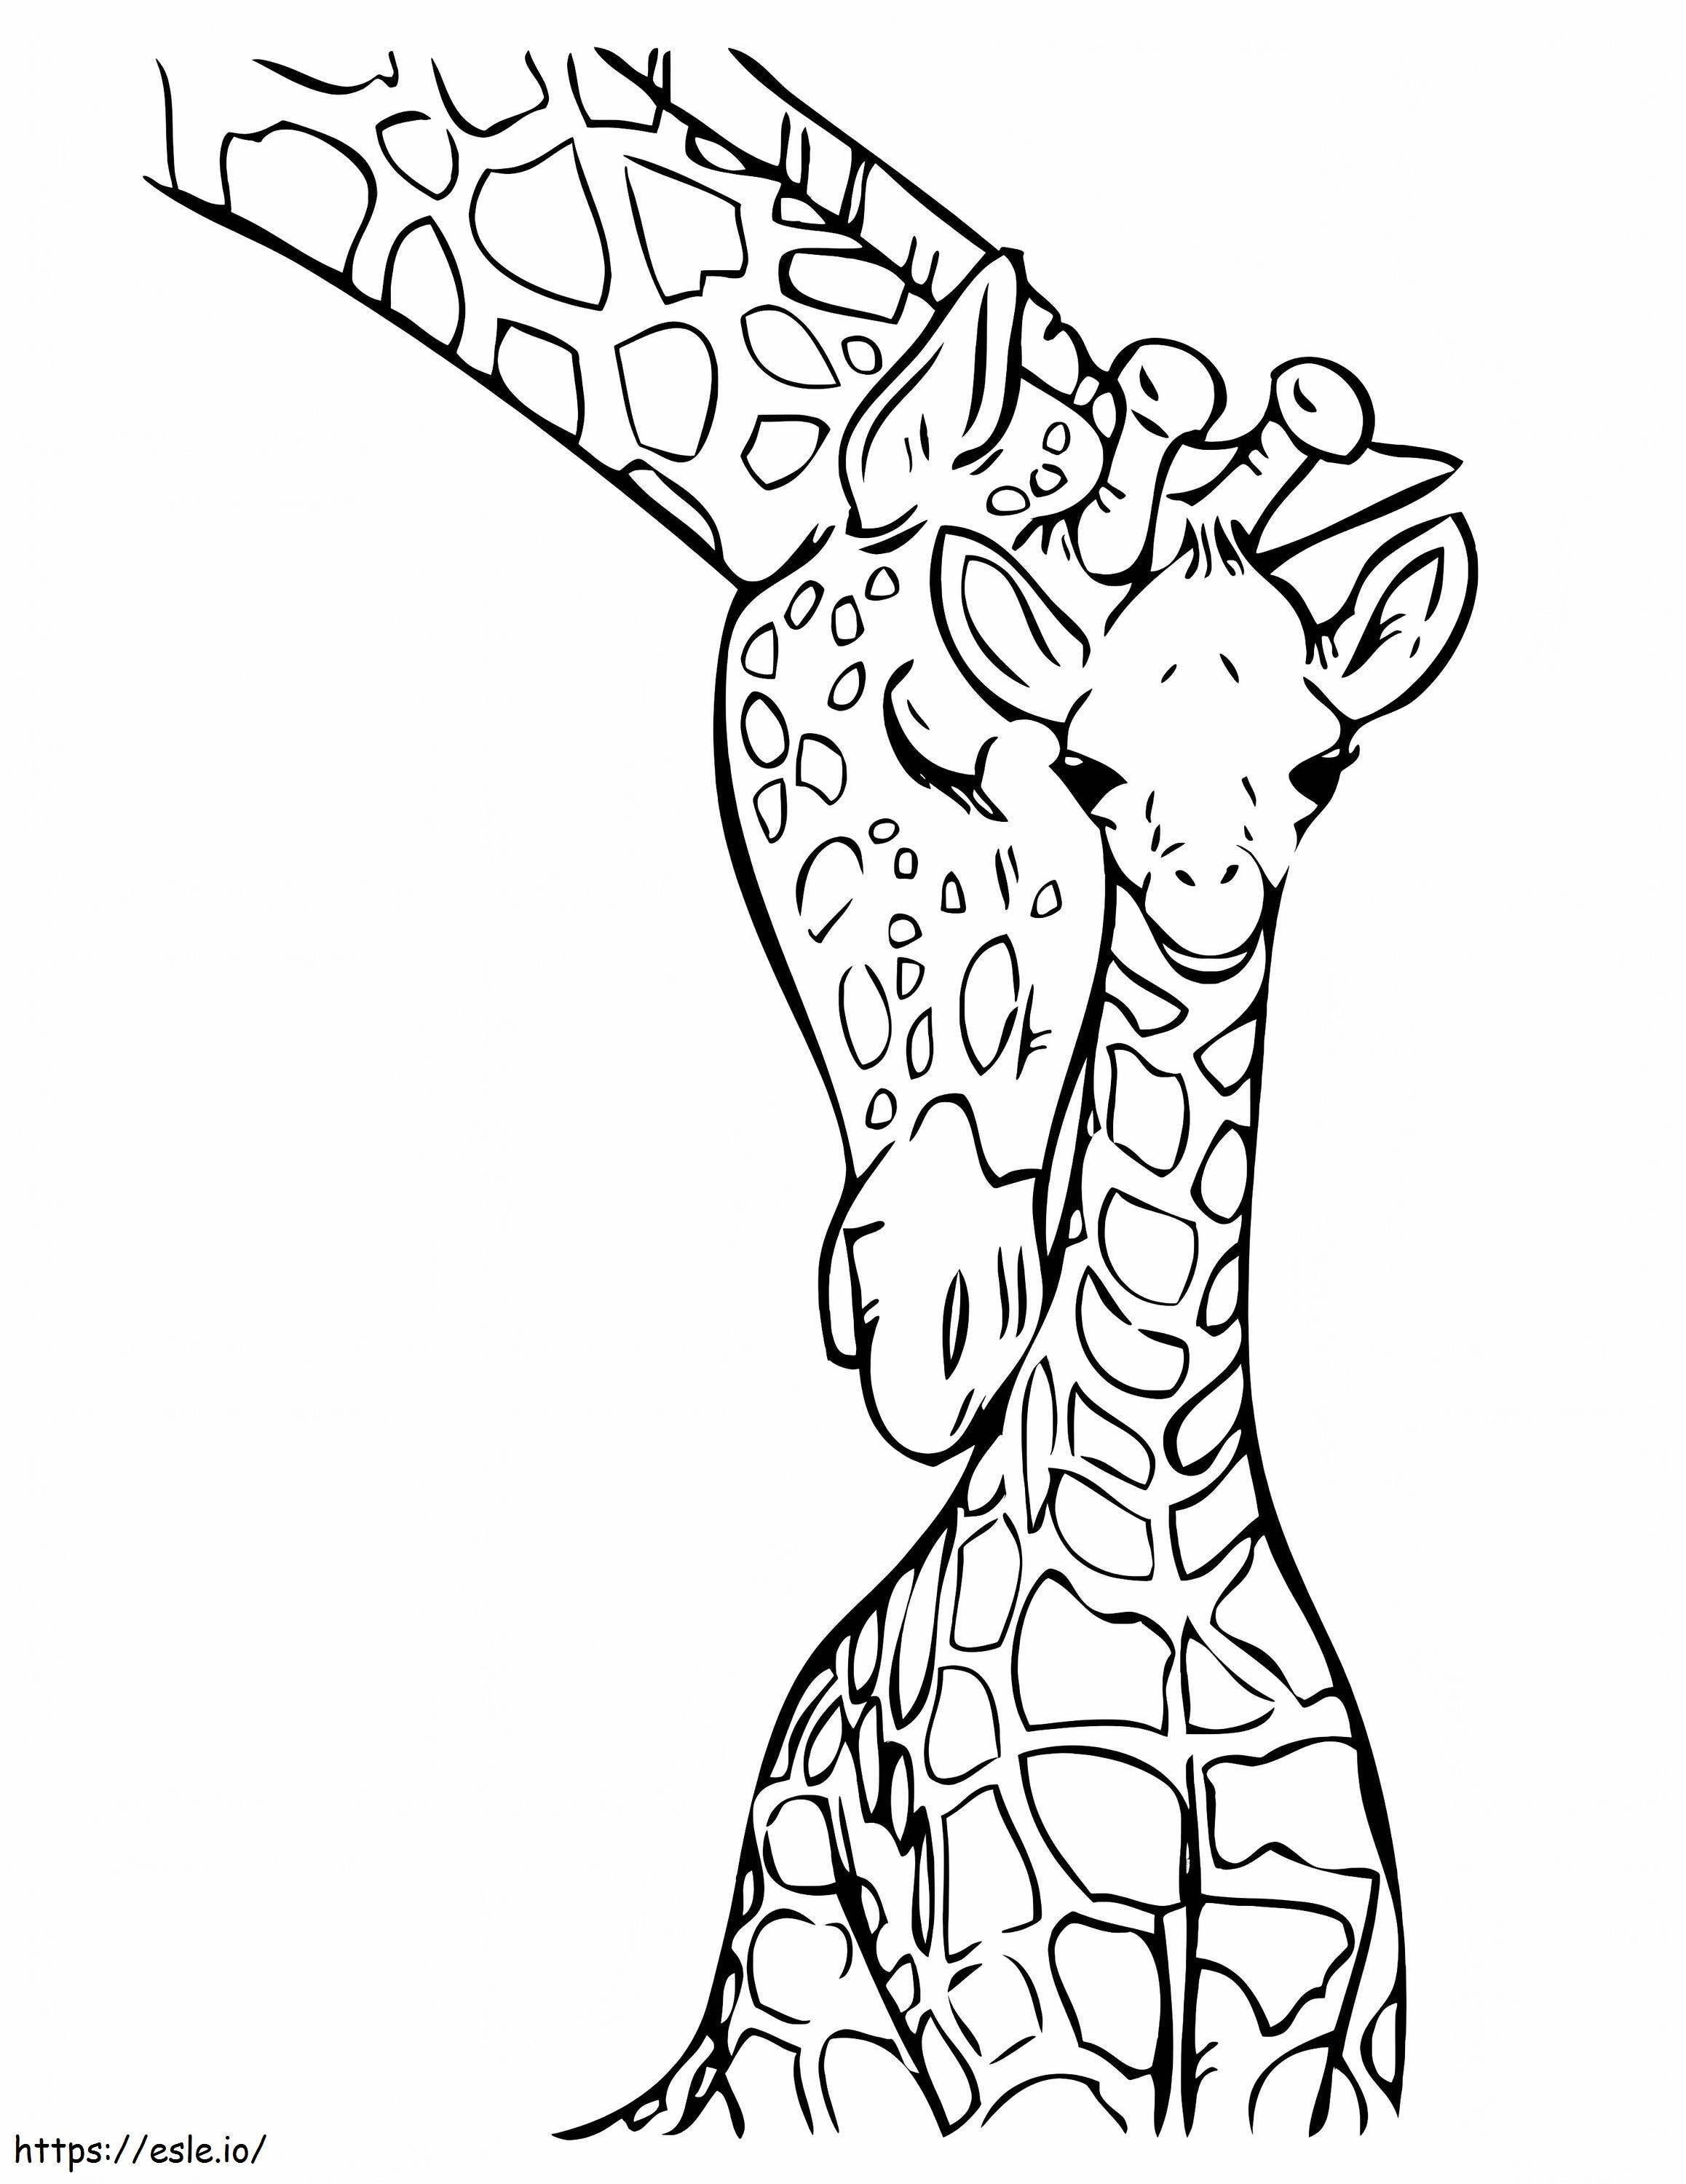 Süße Giraffe zwei ausmalbilder